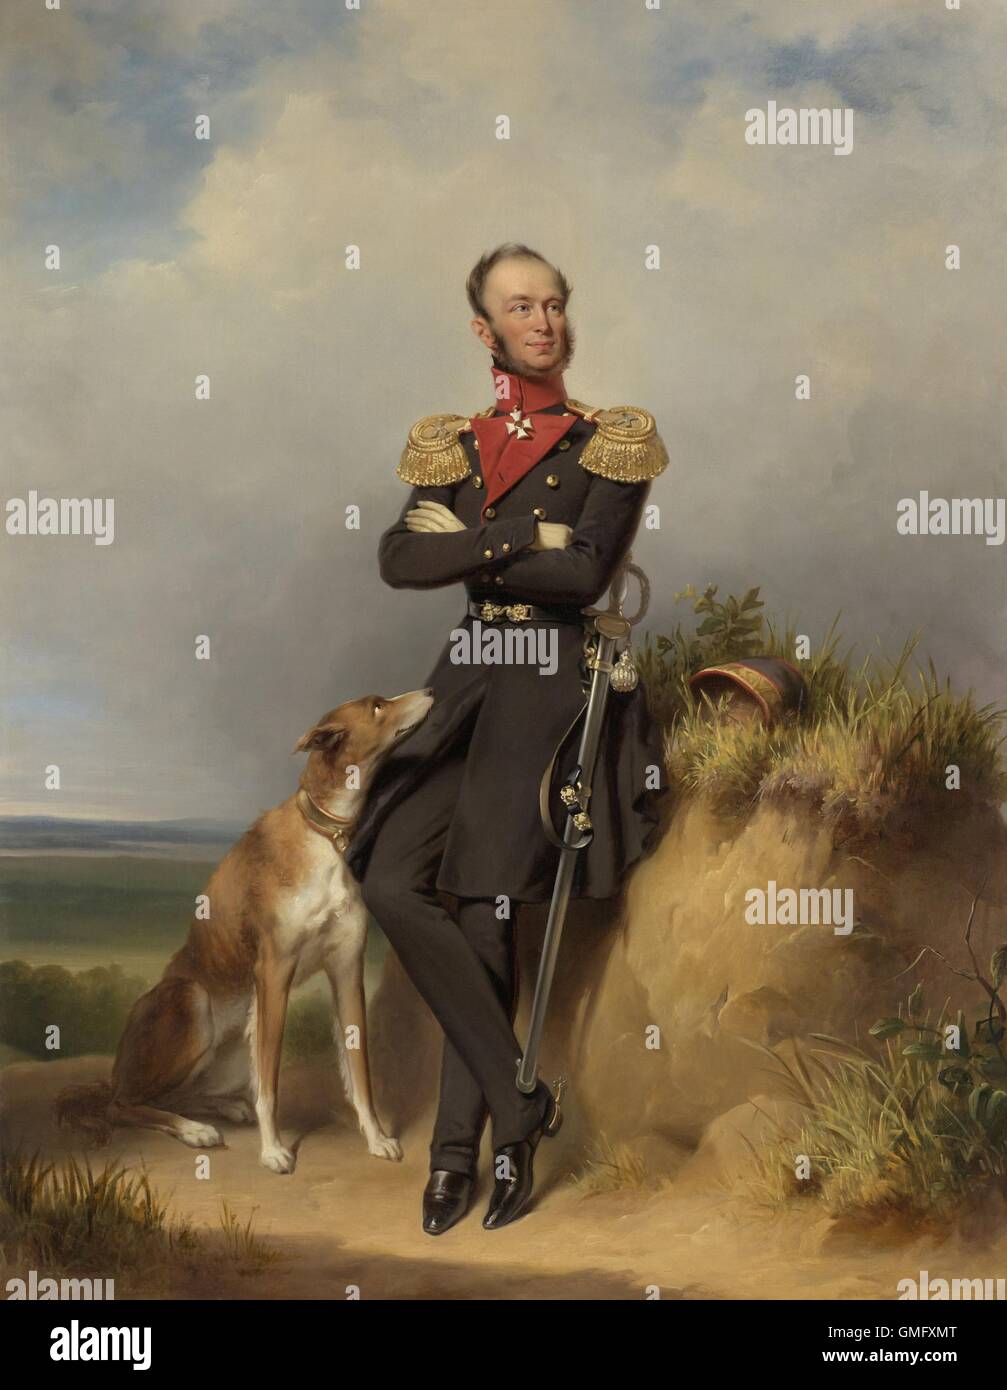 Wilhelm II., König der Niederlande, von Jan Adam Kruseman, 1839, niederländische Malerei, Öl auf Leinwand. Eine militärische Uniform tragen, ist er mit seinem Hund auf Sanddünen (BSLOC 2016 2 261) Stockfoto